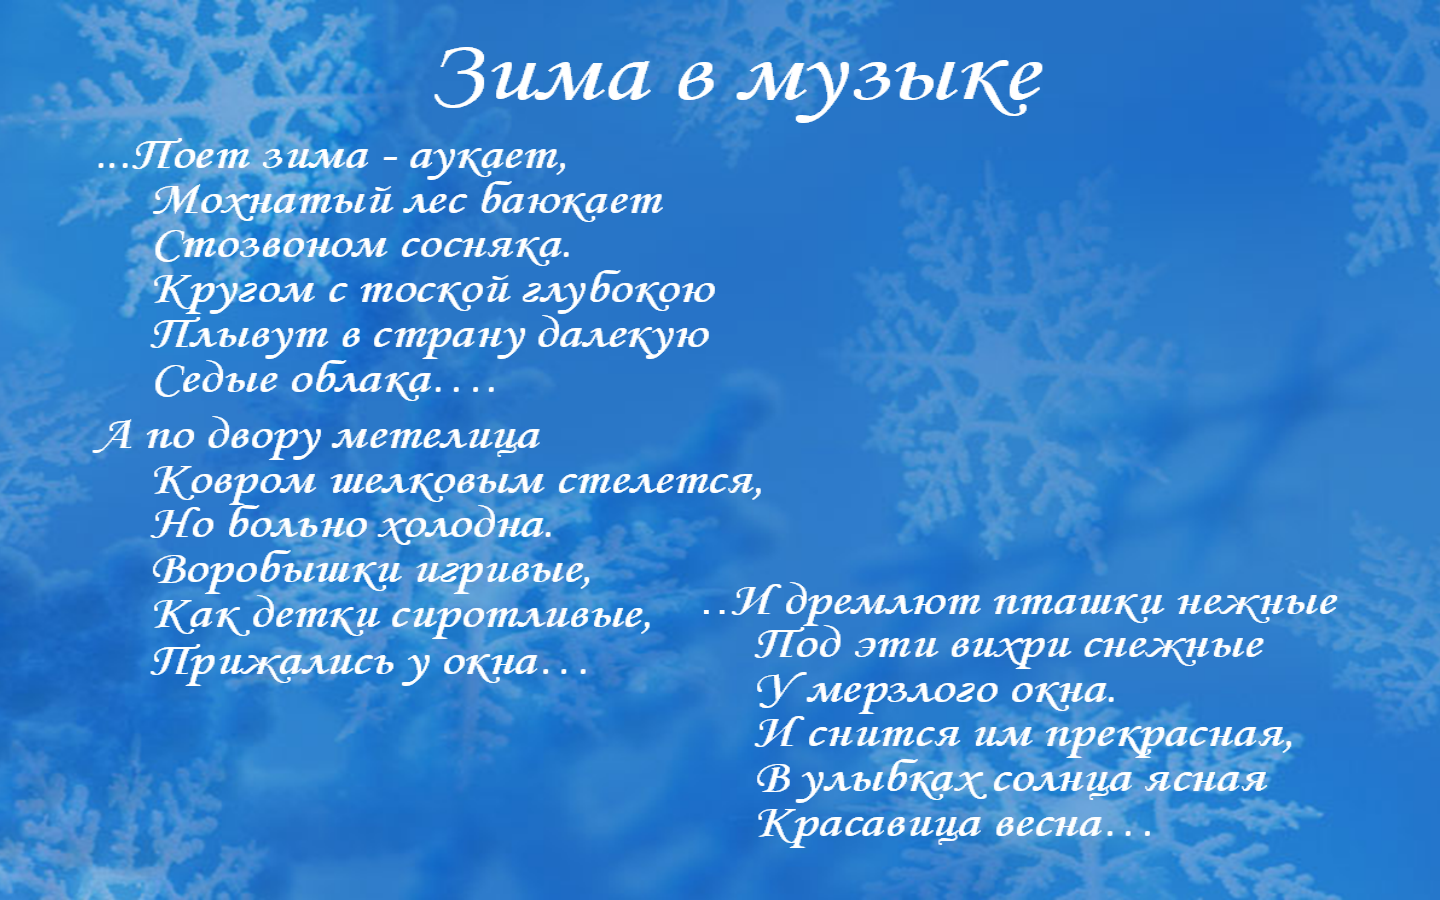 Слушать стихотворение зимнее. Стих Есенина поет зима аукает. Стих Есенина поет зима.